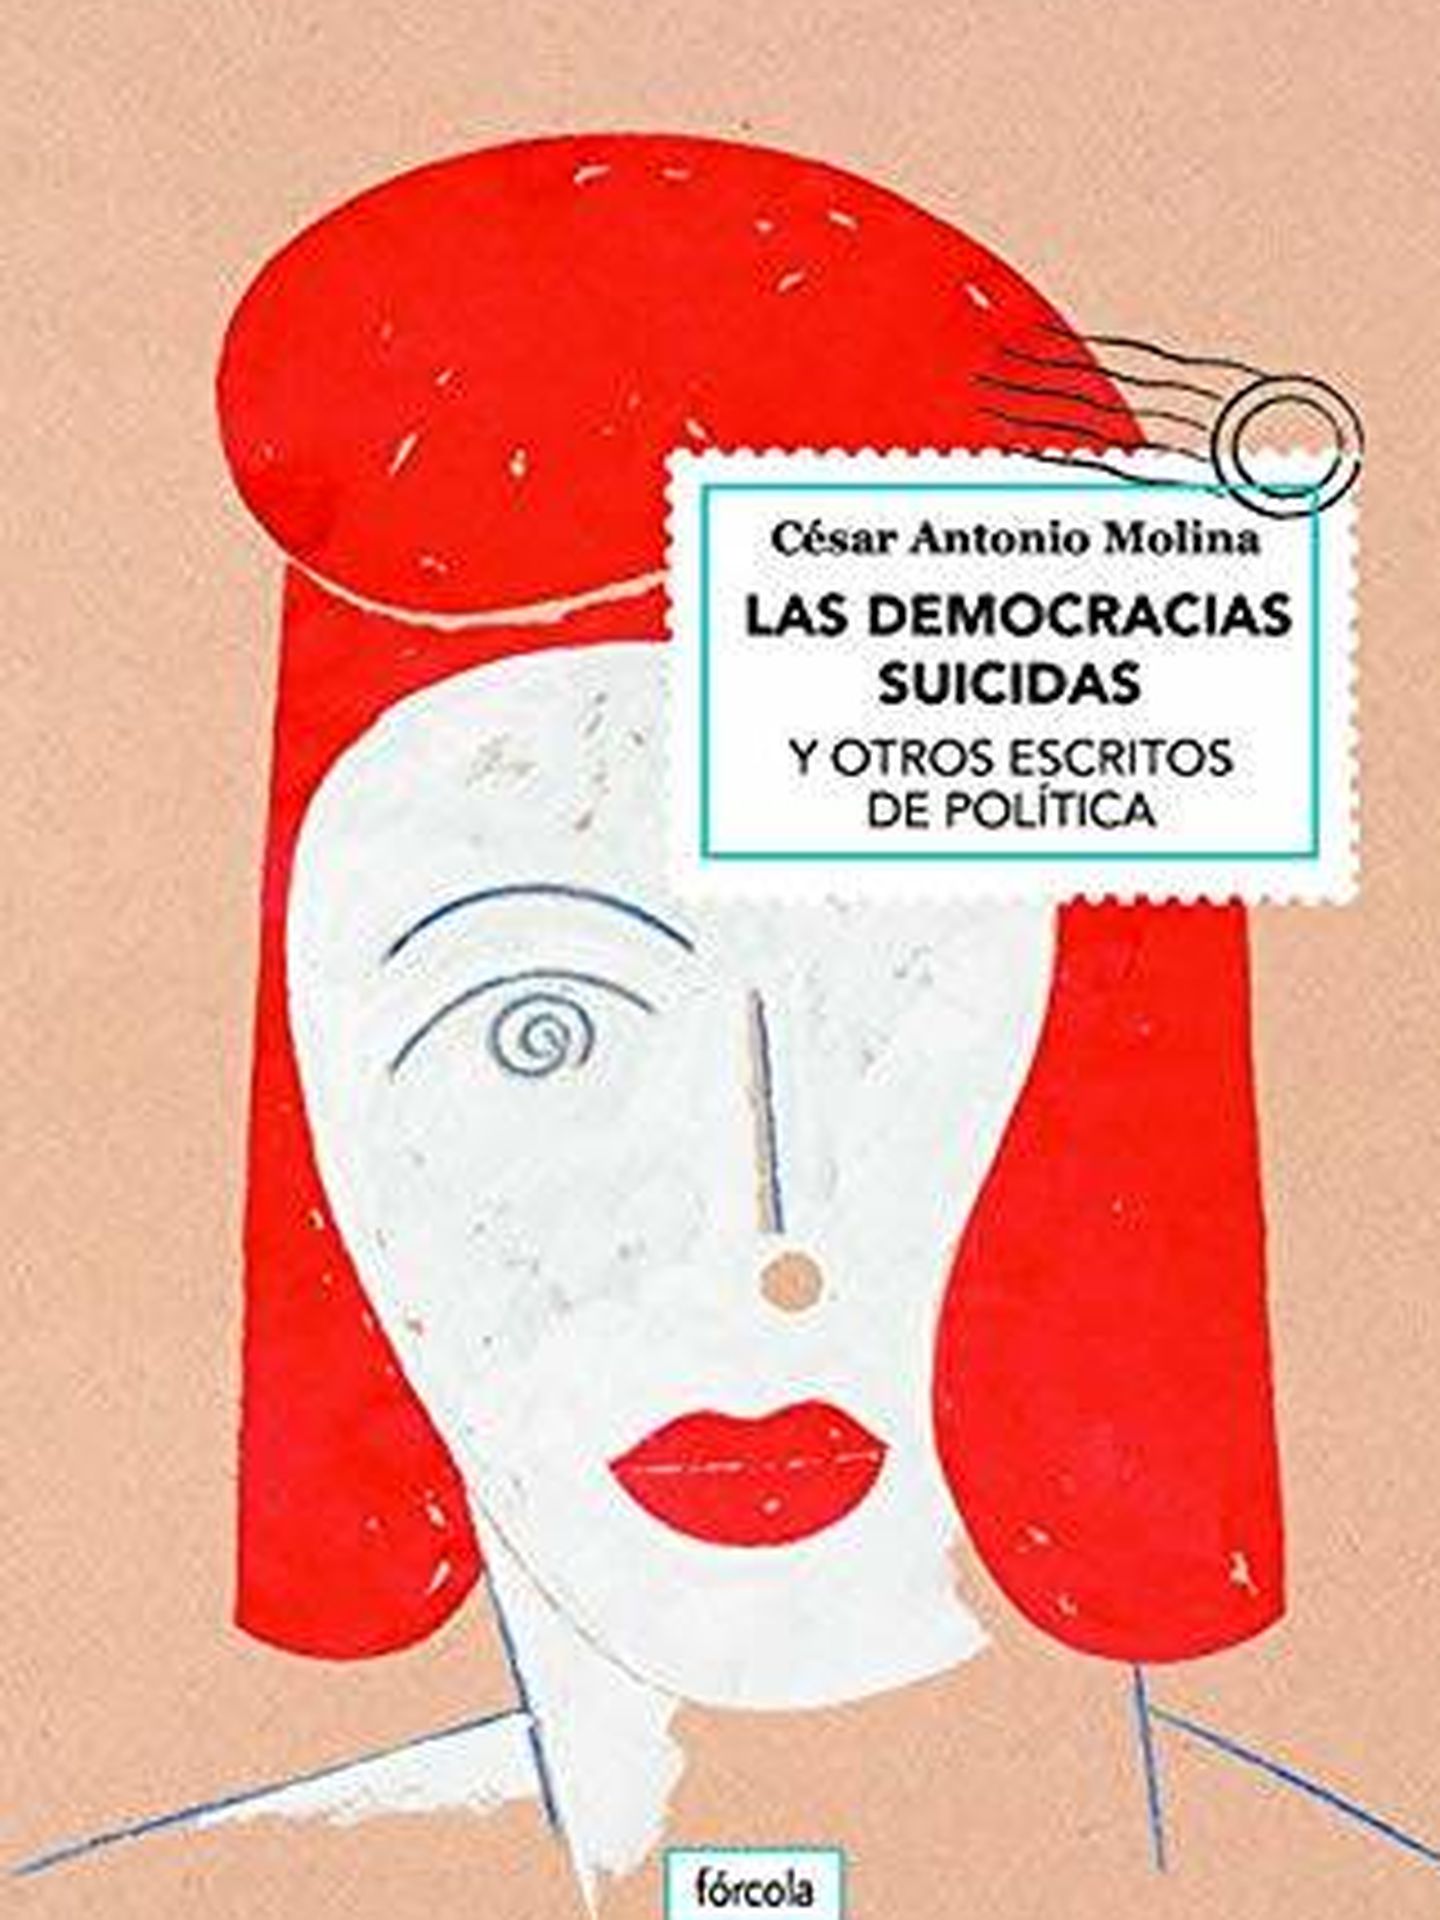 'Las democracias suicidas. (Fórcola)